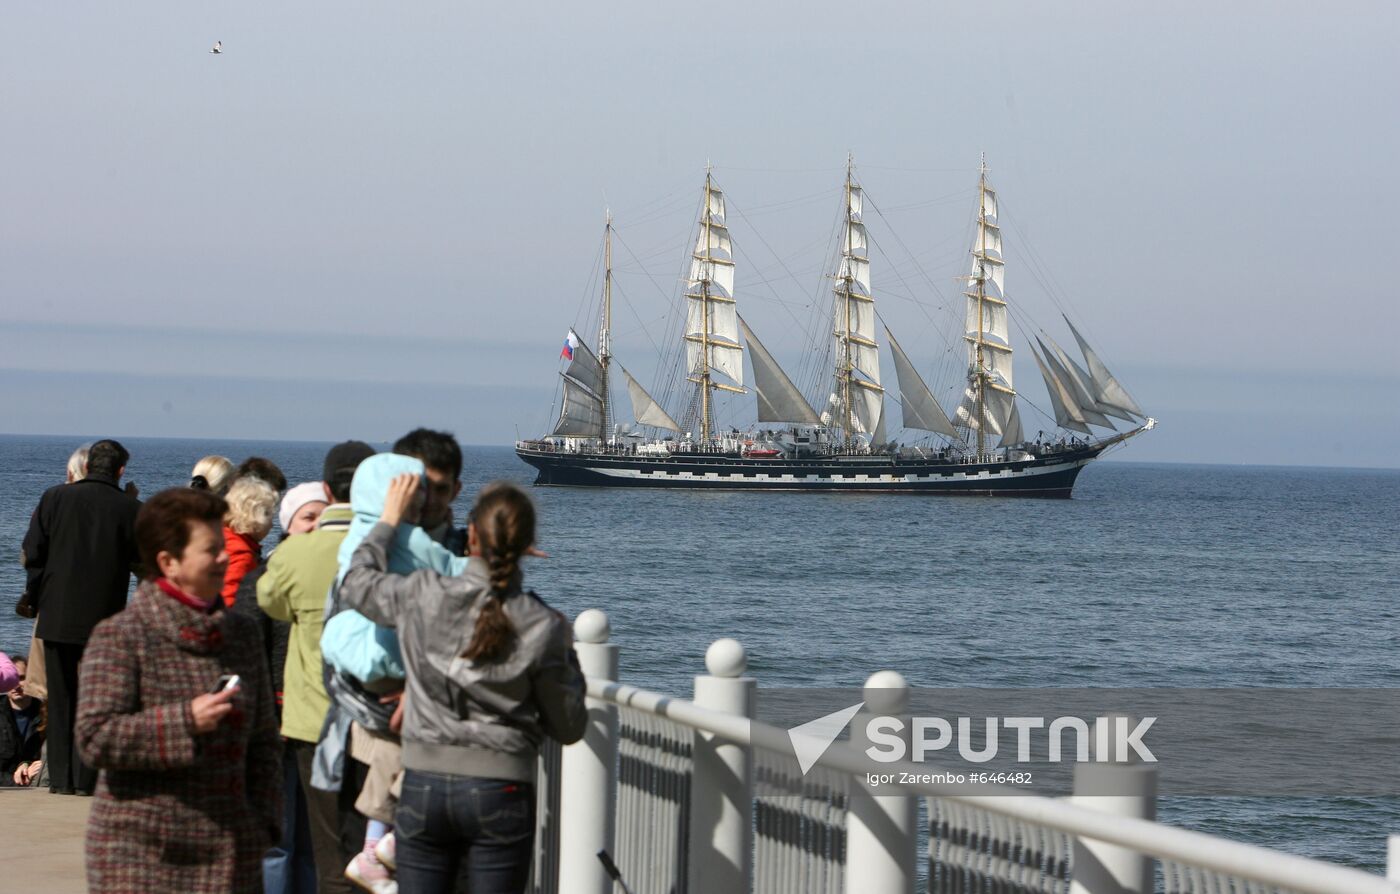 Kruzenshtern barque arrives in Kaliningrad